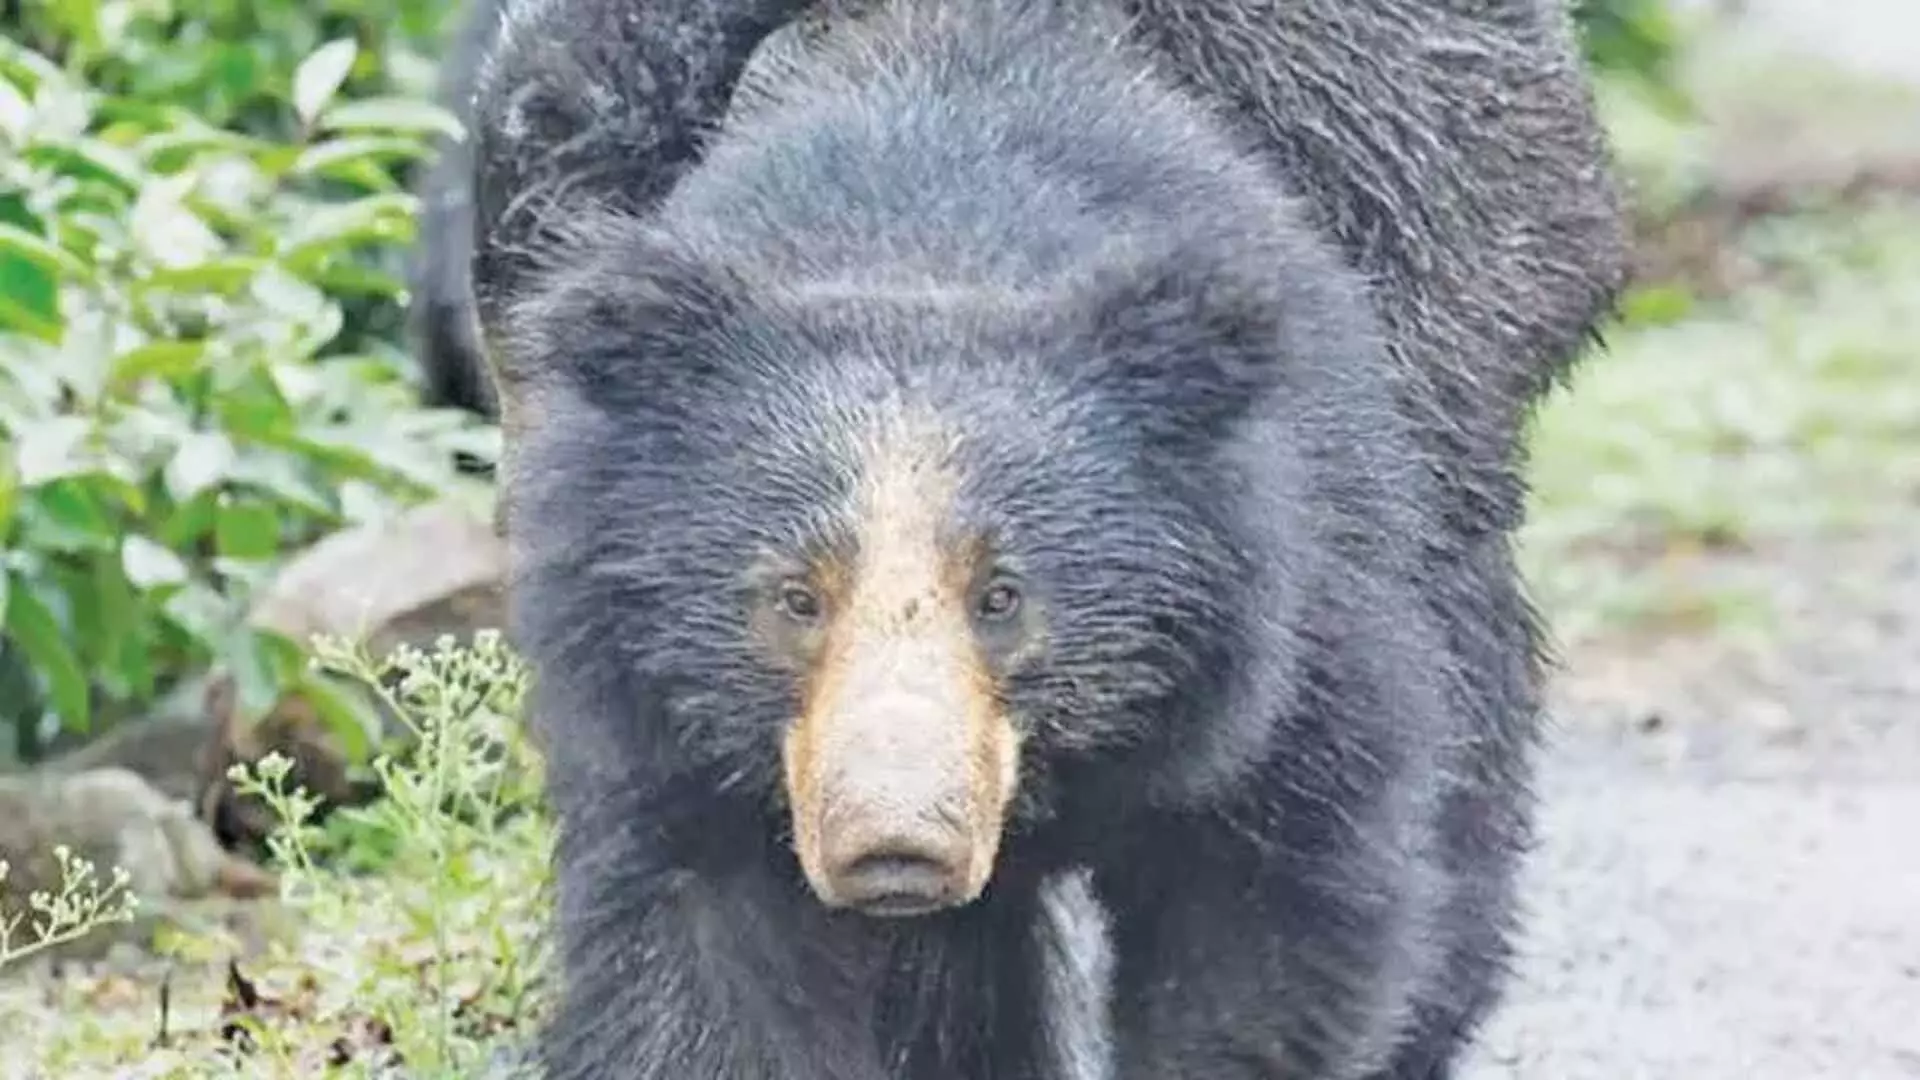 ANANTAPUR: भालू ने बिस्कुट का स्वाद चखा, नियमित रूप से गोदाम का दौरा किया